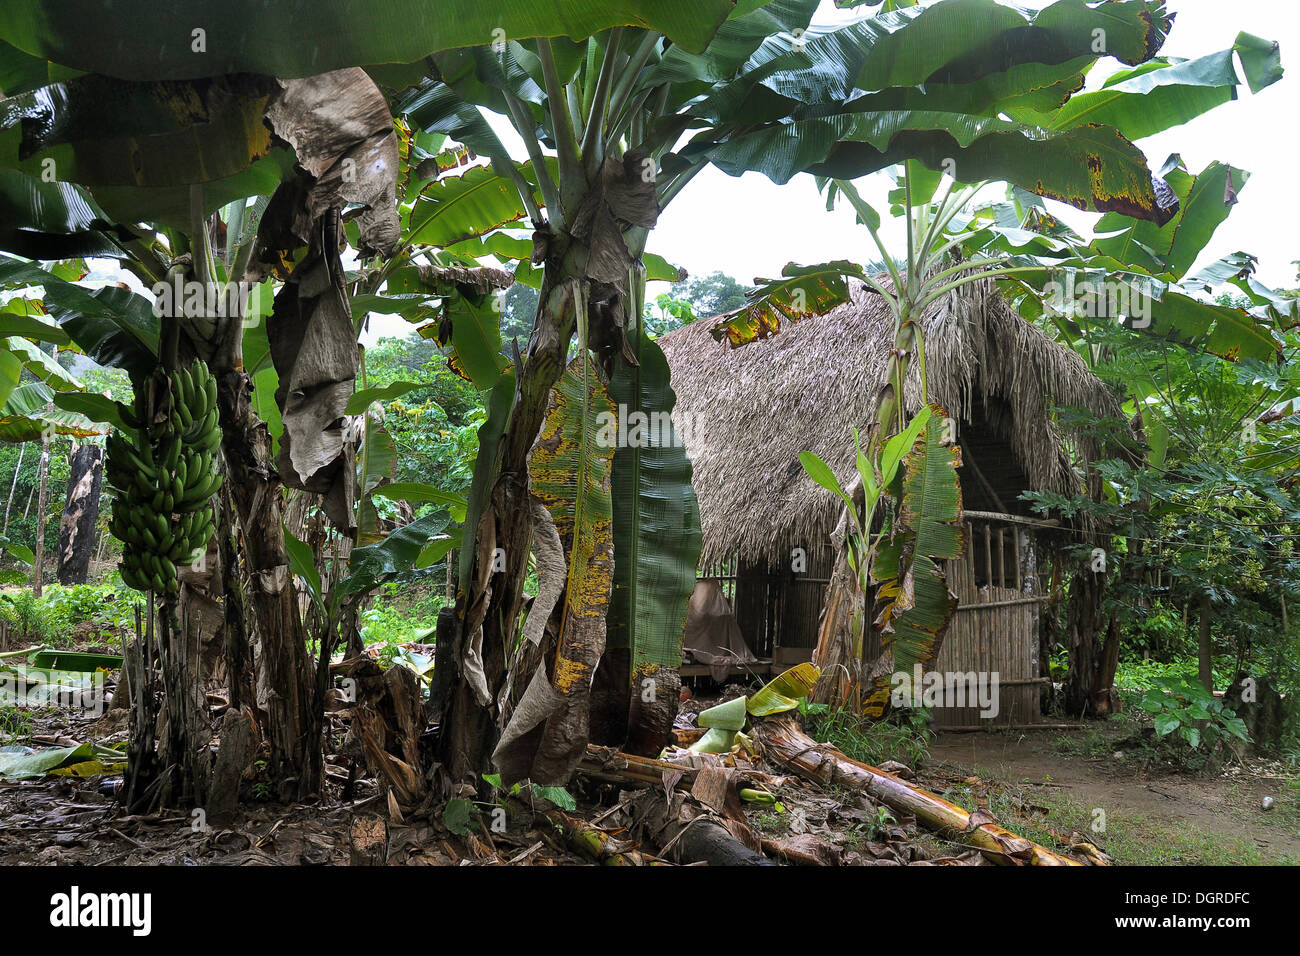 Cabane en bois, village indien, Amazonie, Brésil, Amérique du Sud Banque D'Images